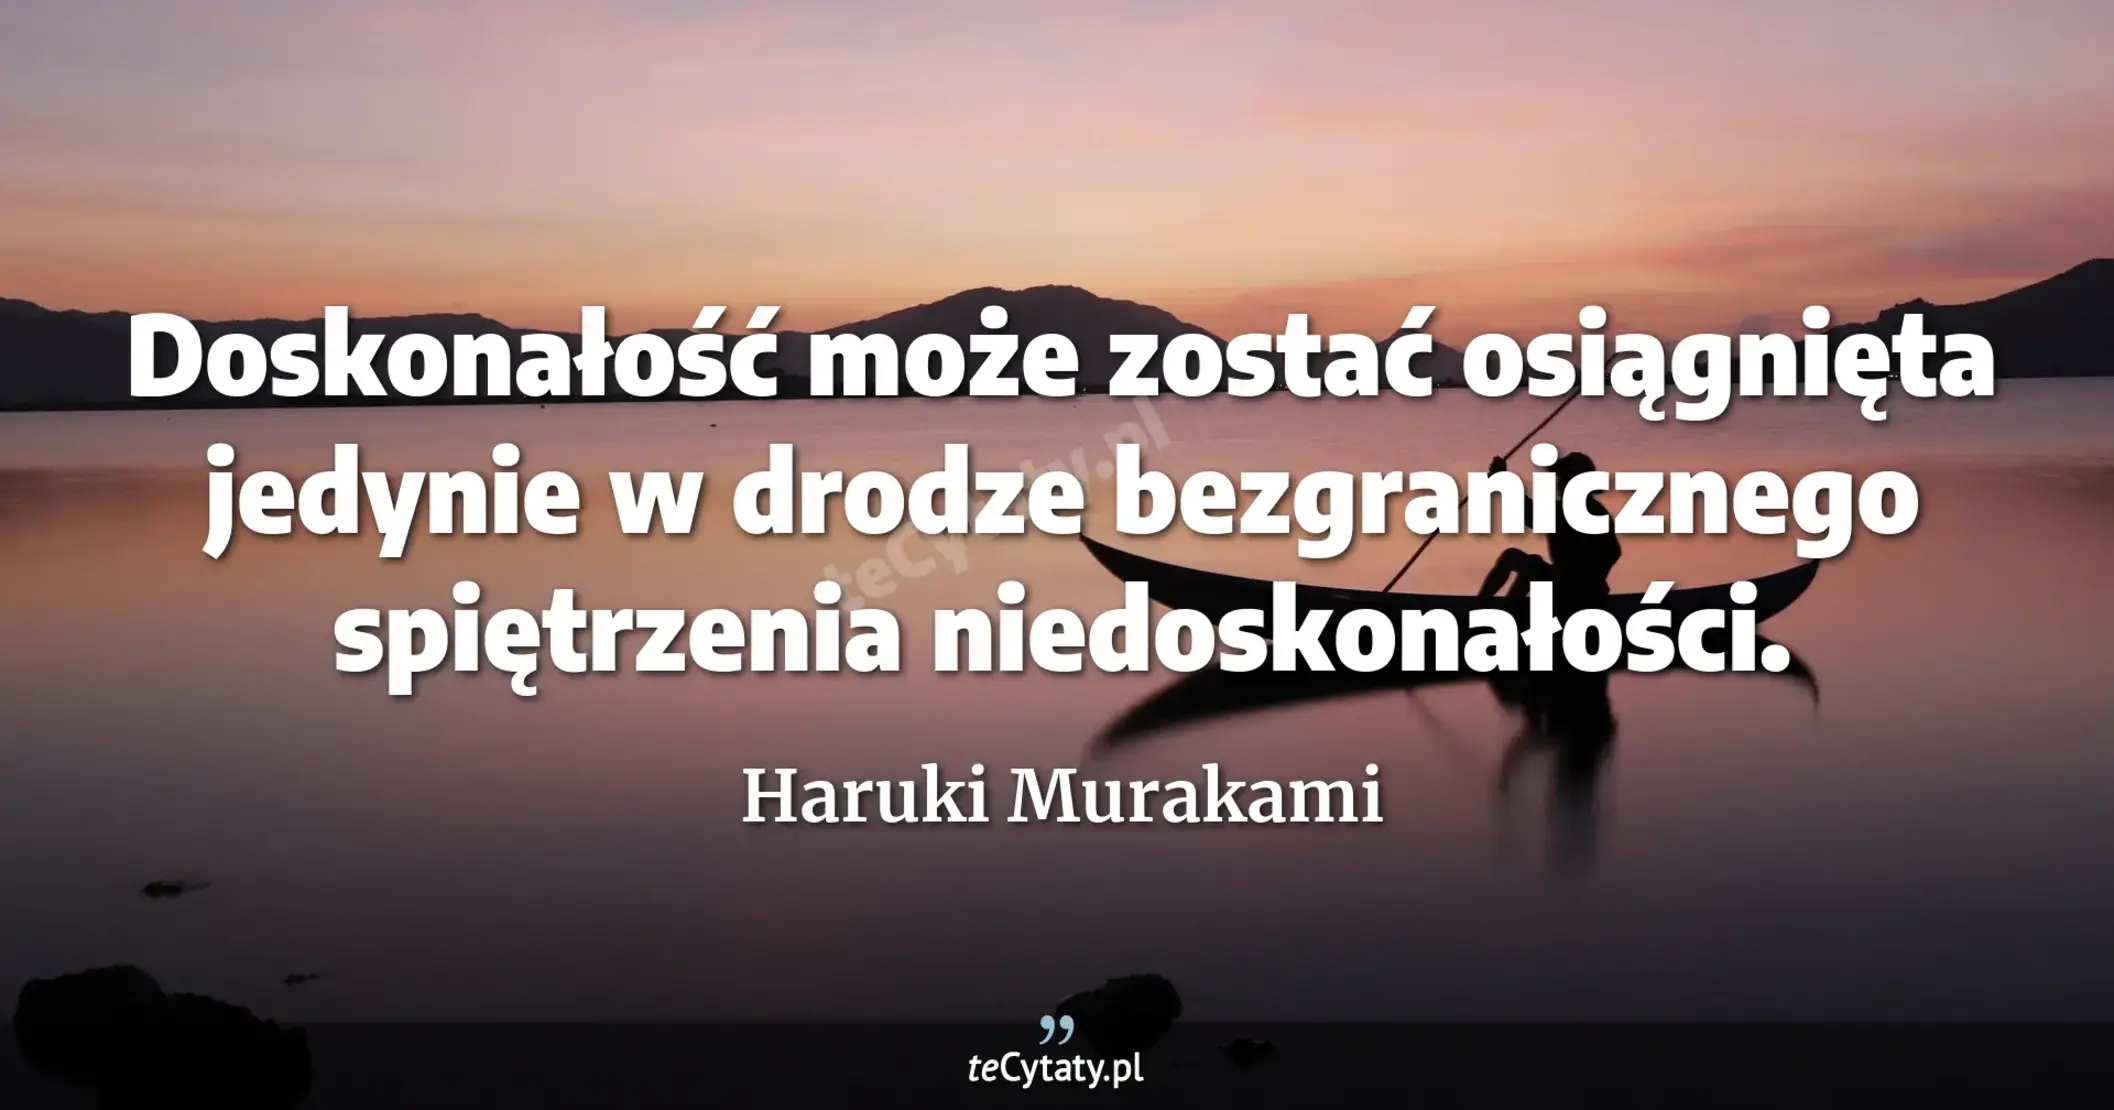 Doskonałość może zostać osiągnięta jedynie w drodze bezgranicznego spiętrzenia niedoskonałości. - Haruki Murakami